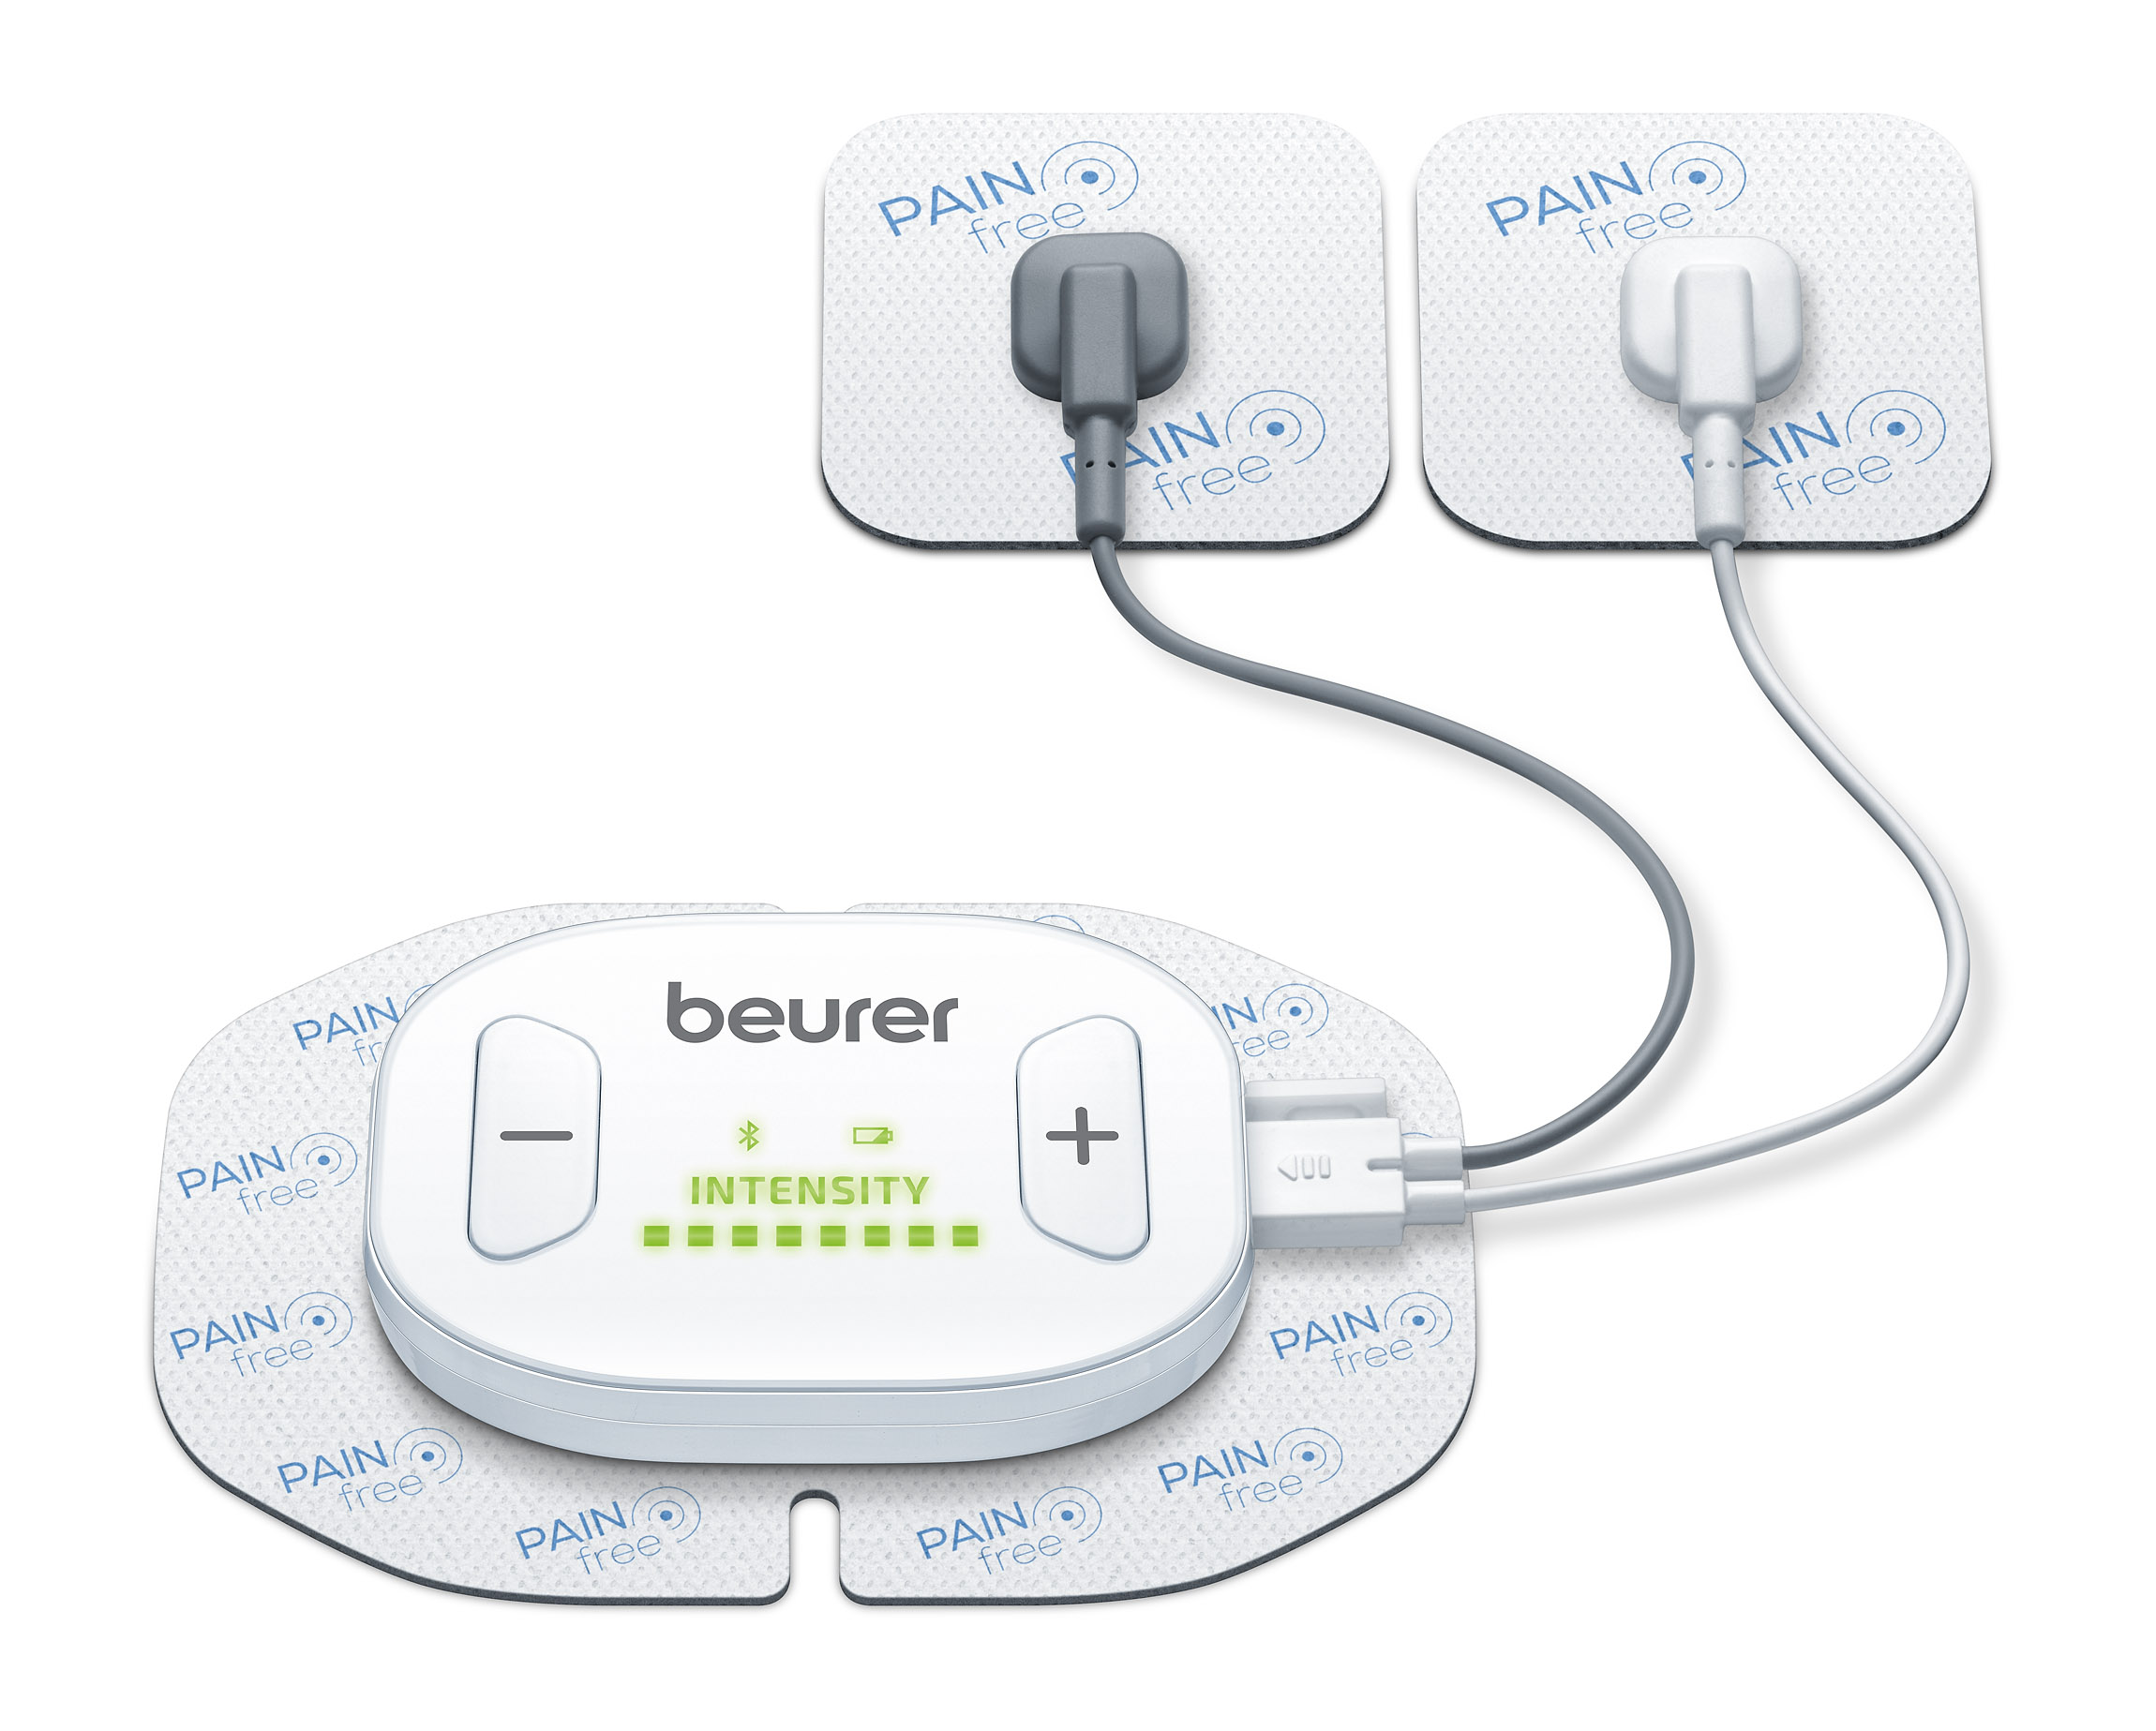 Beurer EM70 Wireless Digital TENS/EMS Bluetooth Device with Remote Control